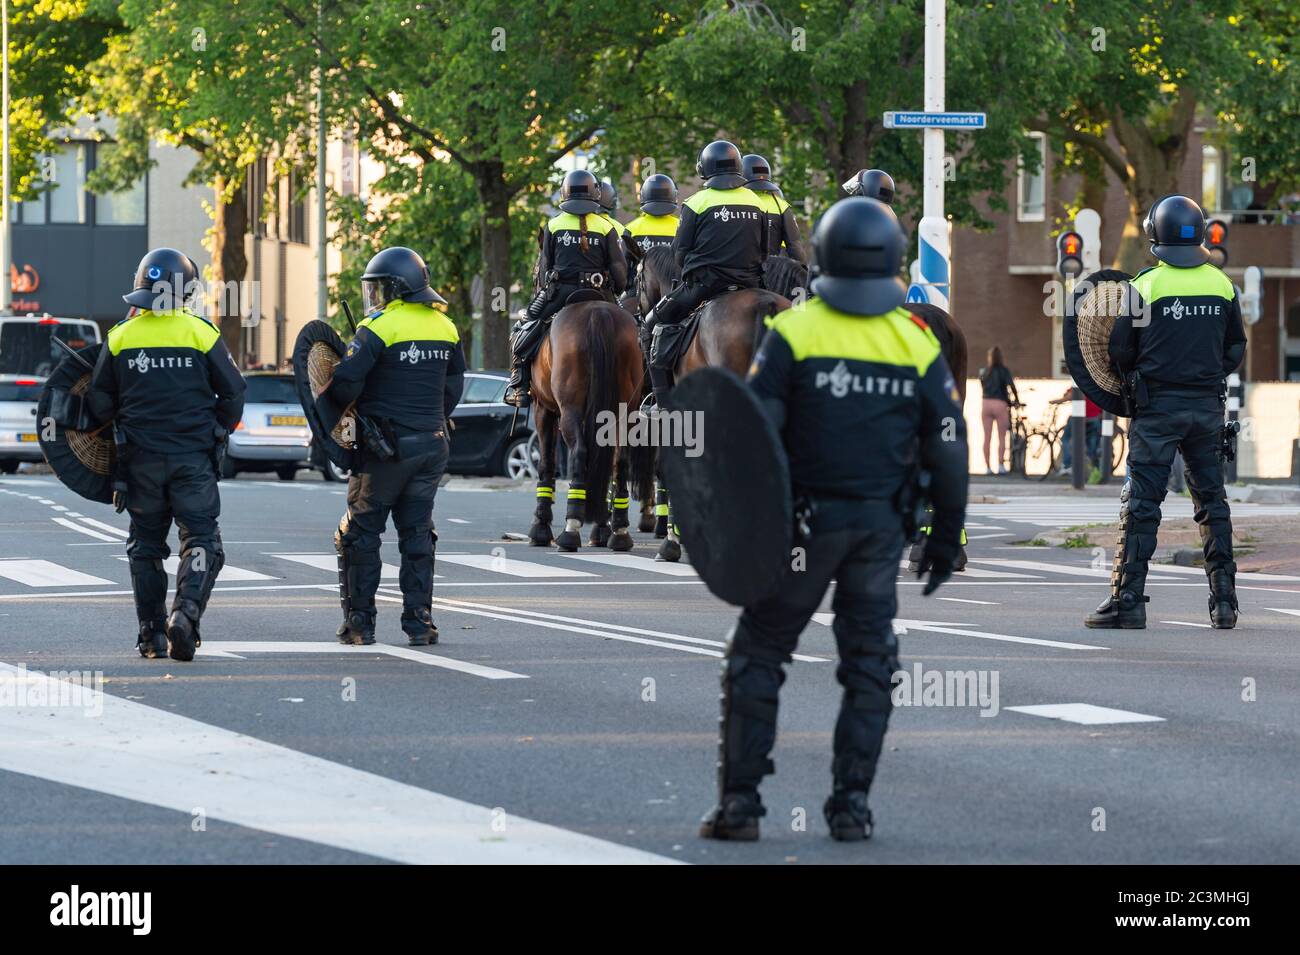 HOORN, PAYS-BAS - JUIN 19 : garde de police dans les environs de la statue de Jan Pieterszoon Coen le 19 juin 2020 à Hoorn, pays-Bas Banque D'Images